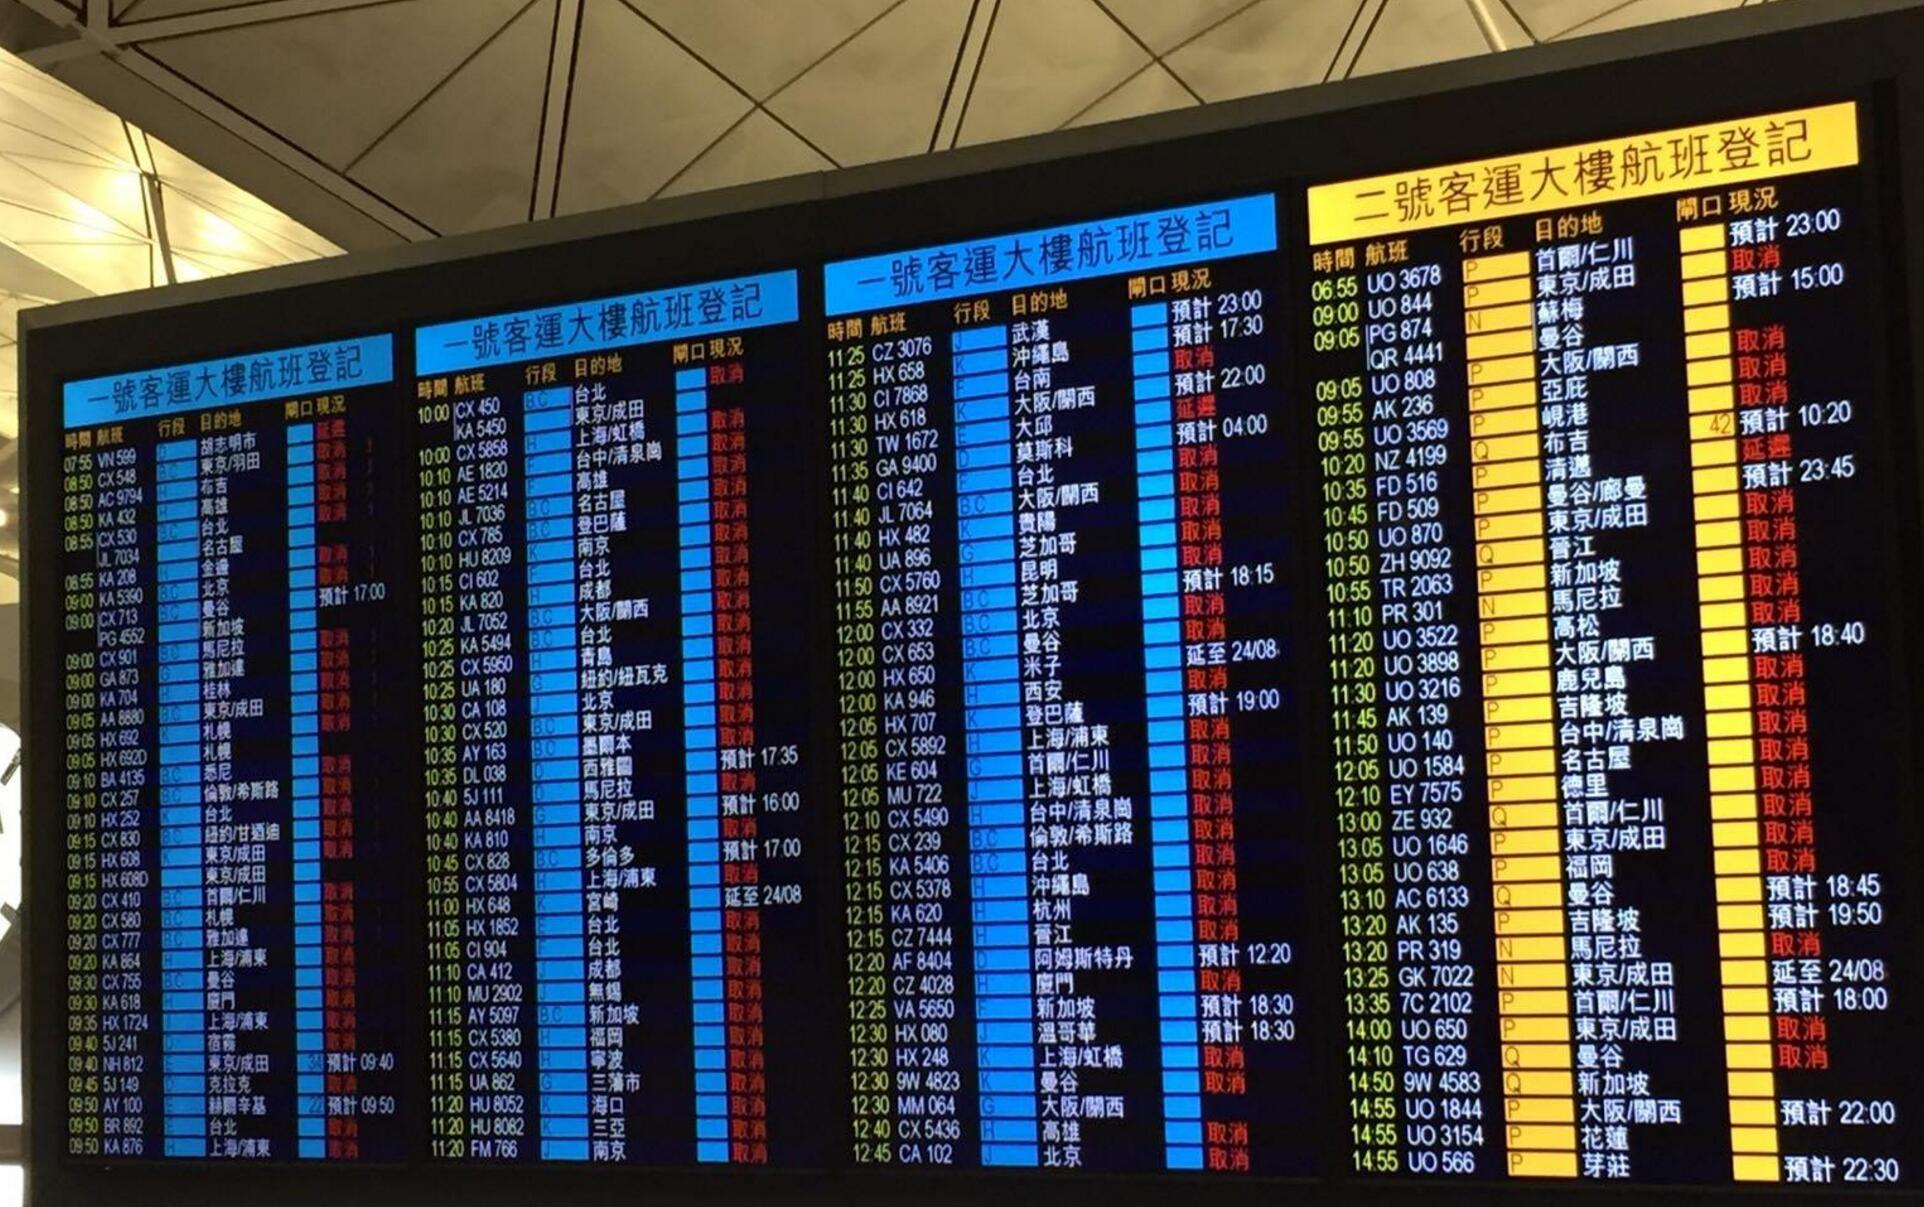 至早上6时半有420班往来香港航班取消 - 香港